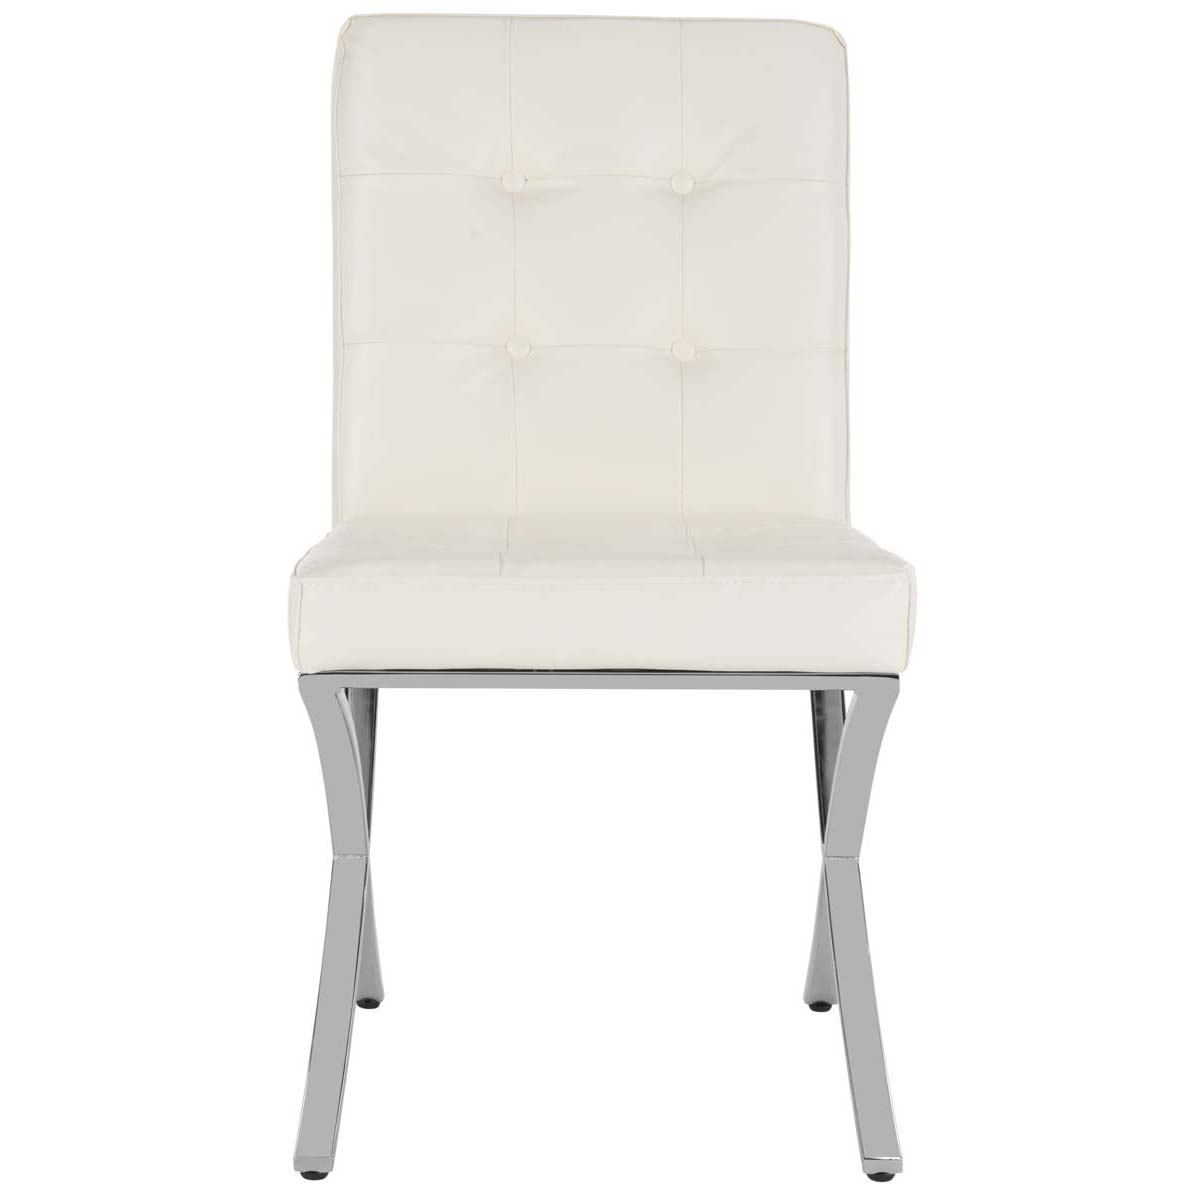 Safavieh Walsh Tufted Side Chair , FOX6300 - White Pu/Chrome